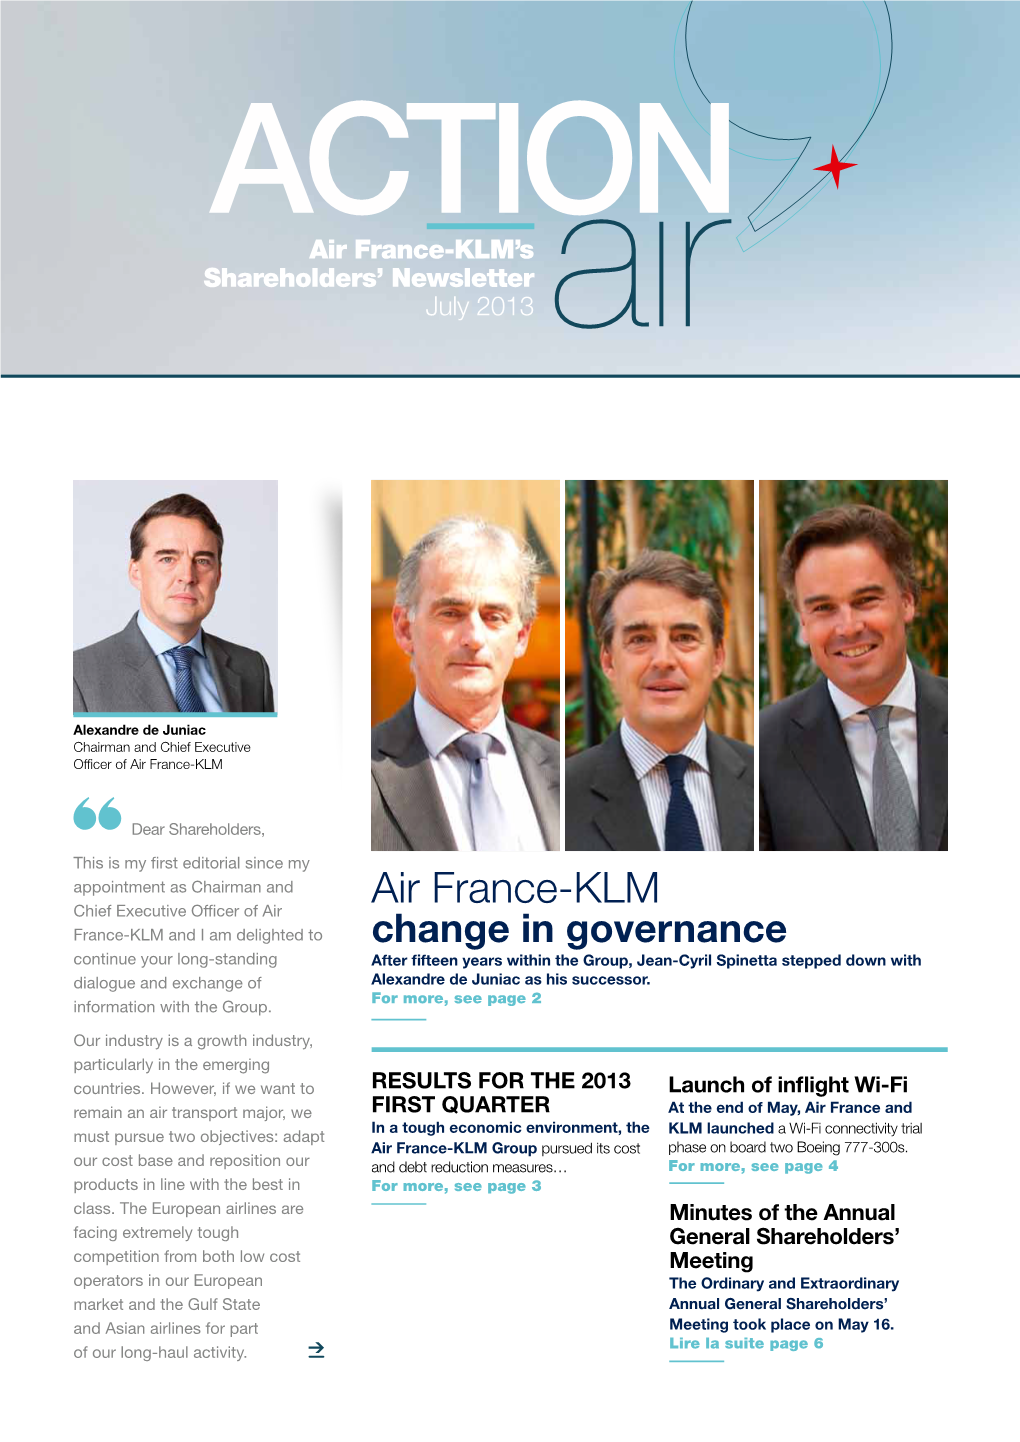 Air France-KLM’S Shareholders’ Newsletter July 2013